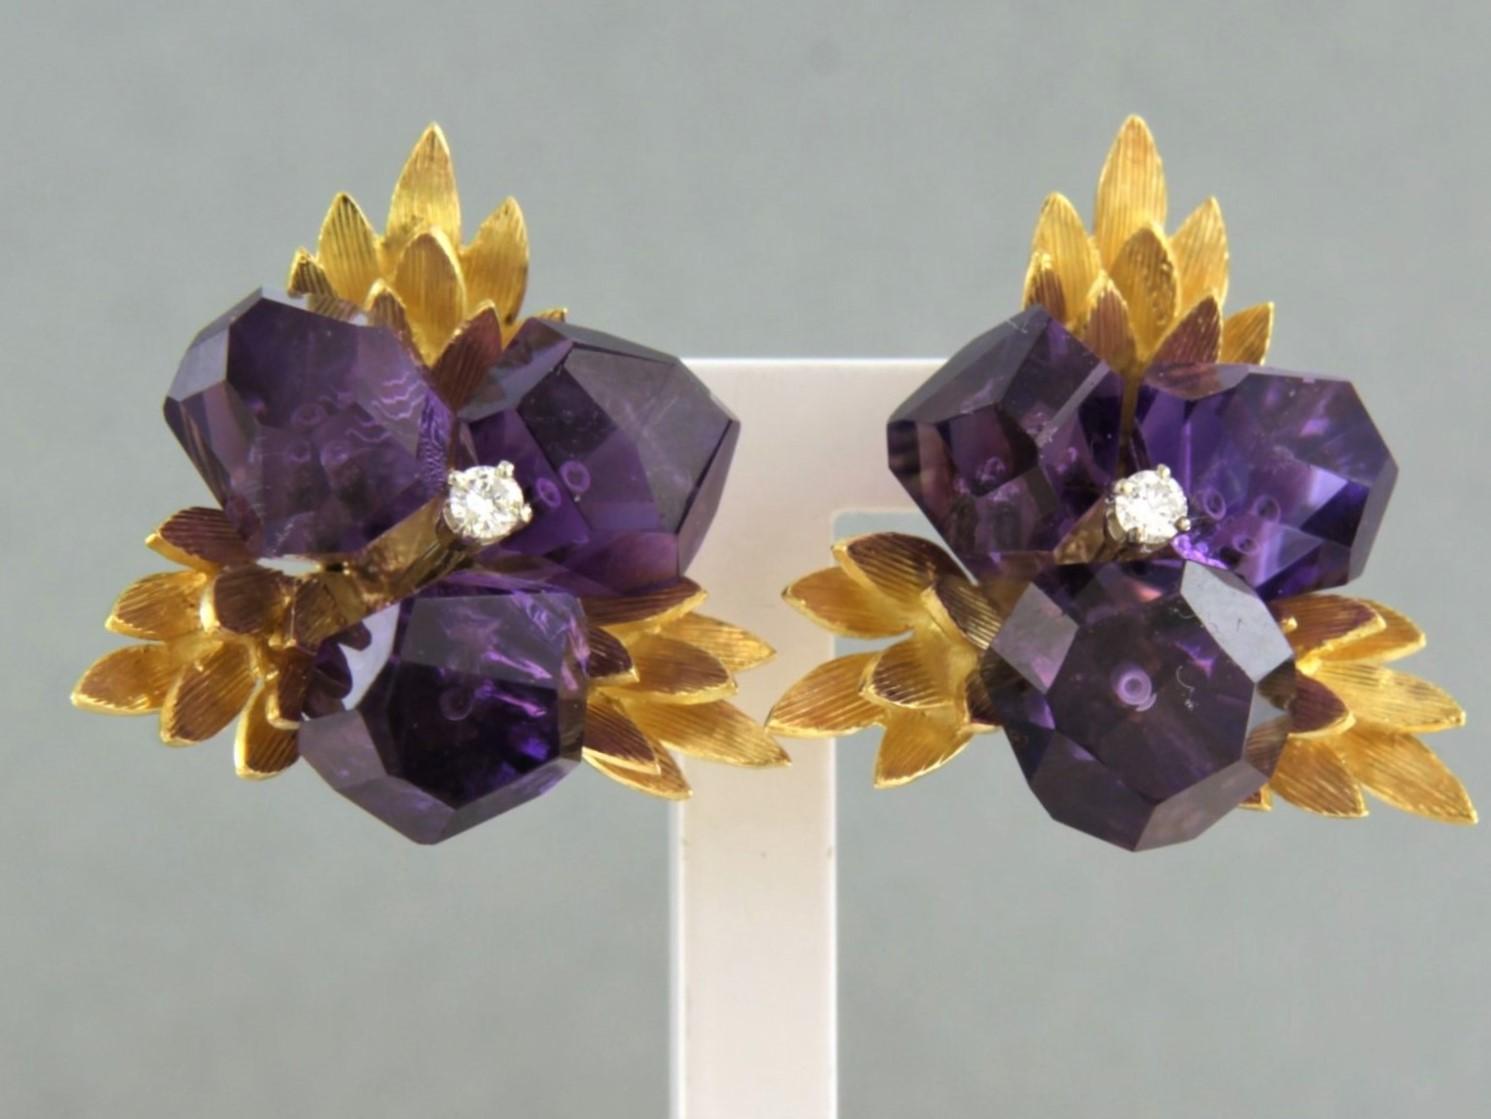 Blumenförmige Clip-Ohrringe aus 18 Karat Bicolor-Gold, besetzt mit Amethysten und Diamanten im Brillantschliff. 0,05ct - F/G - VS/SI

detaillierte Beschreibung:

die Spitze des Ohrrings ist 2,3 cm x 2,2 cm breit

Gewicht 13,5 Gramm

gesetzt mit

- 6